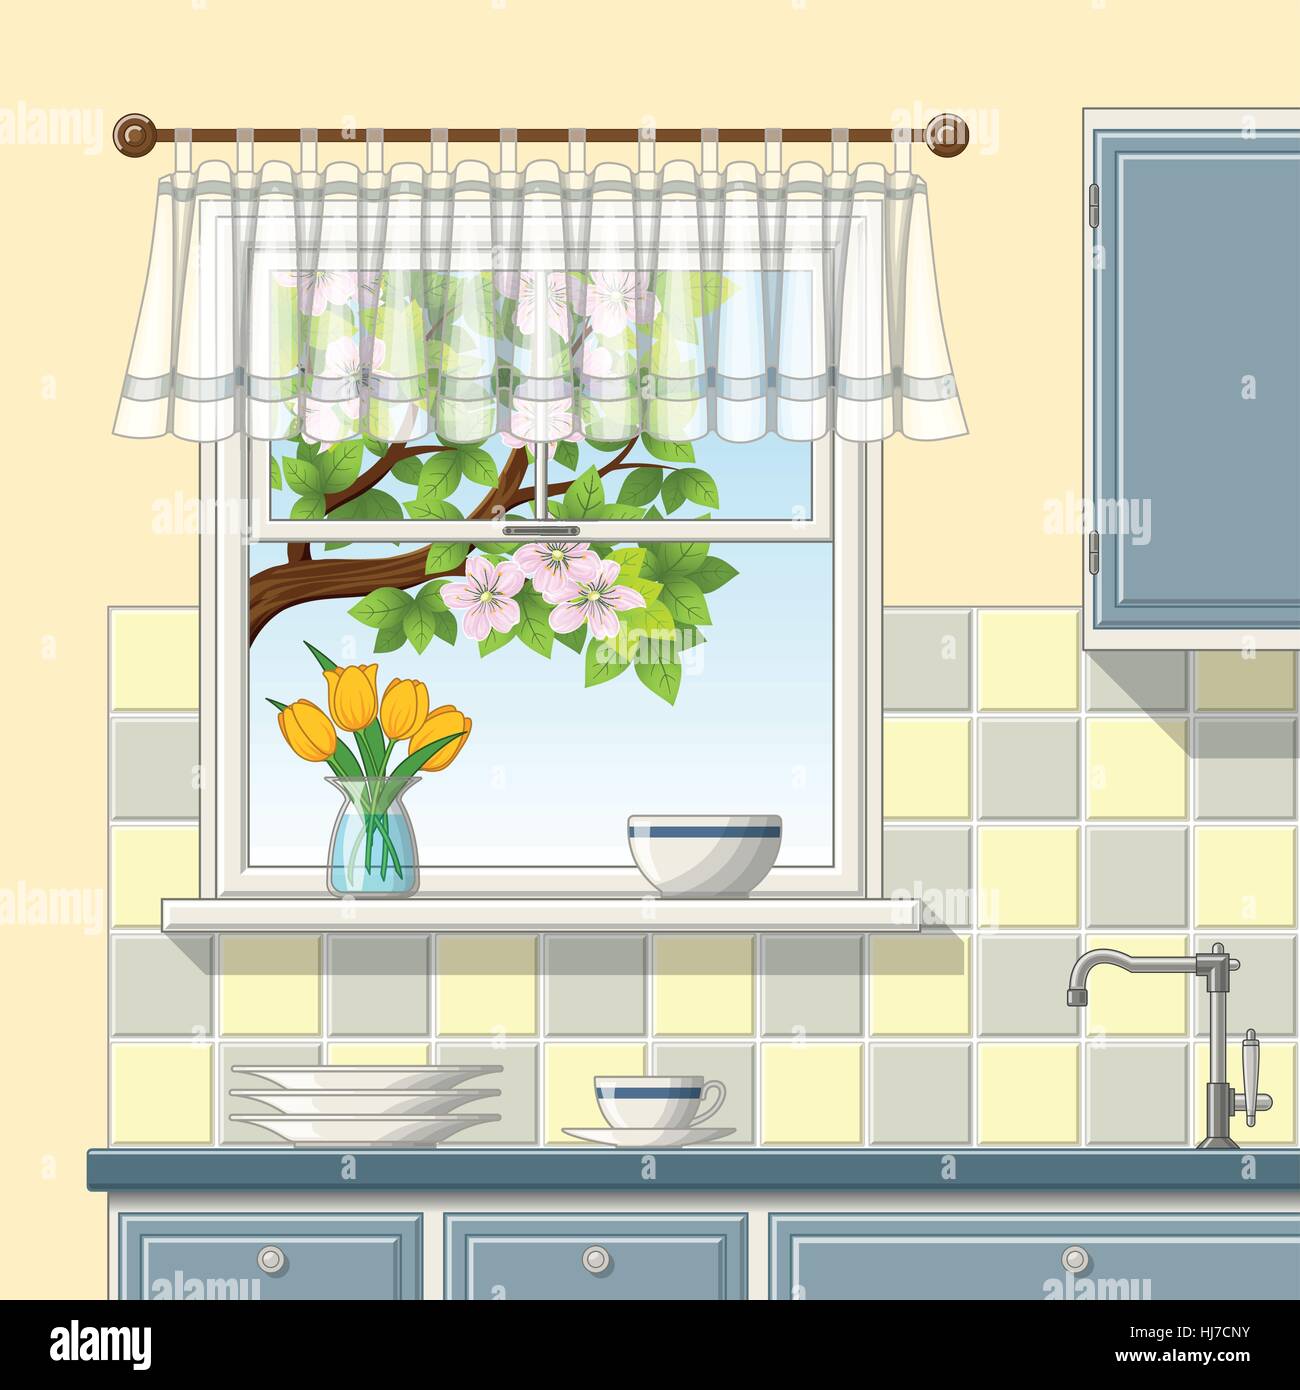 Illustrtion of a kitchen window Stock Vector